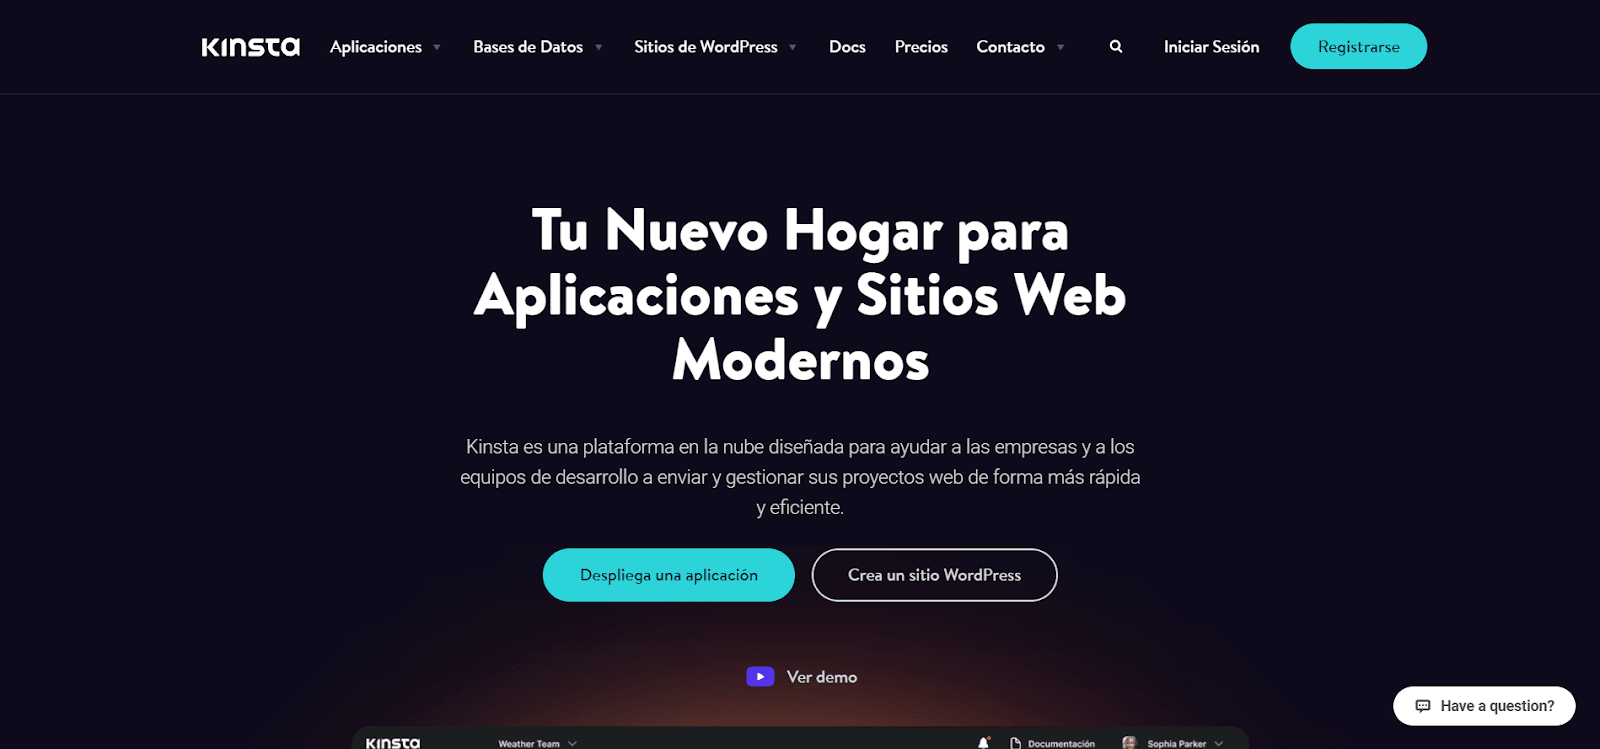 Kinsta-hjemmesiden på spansk.